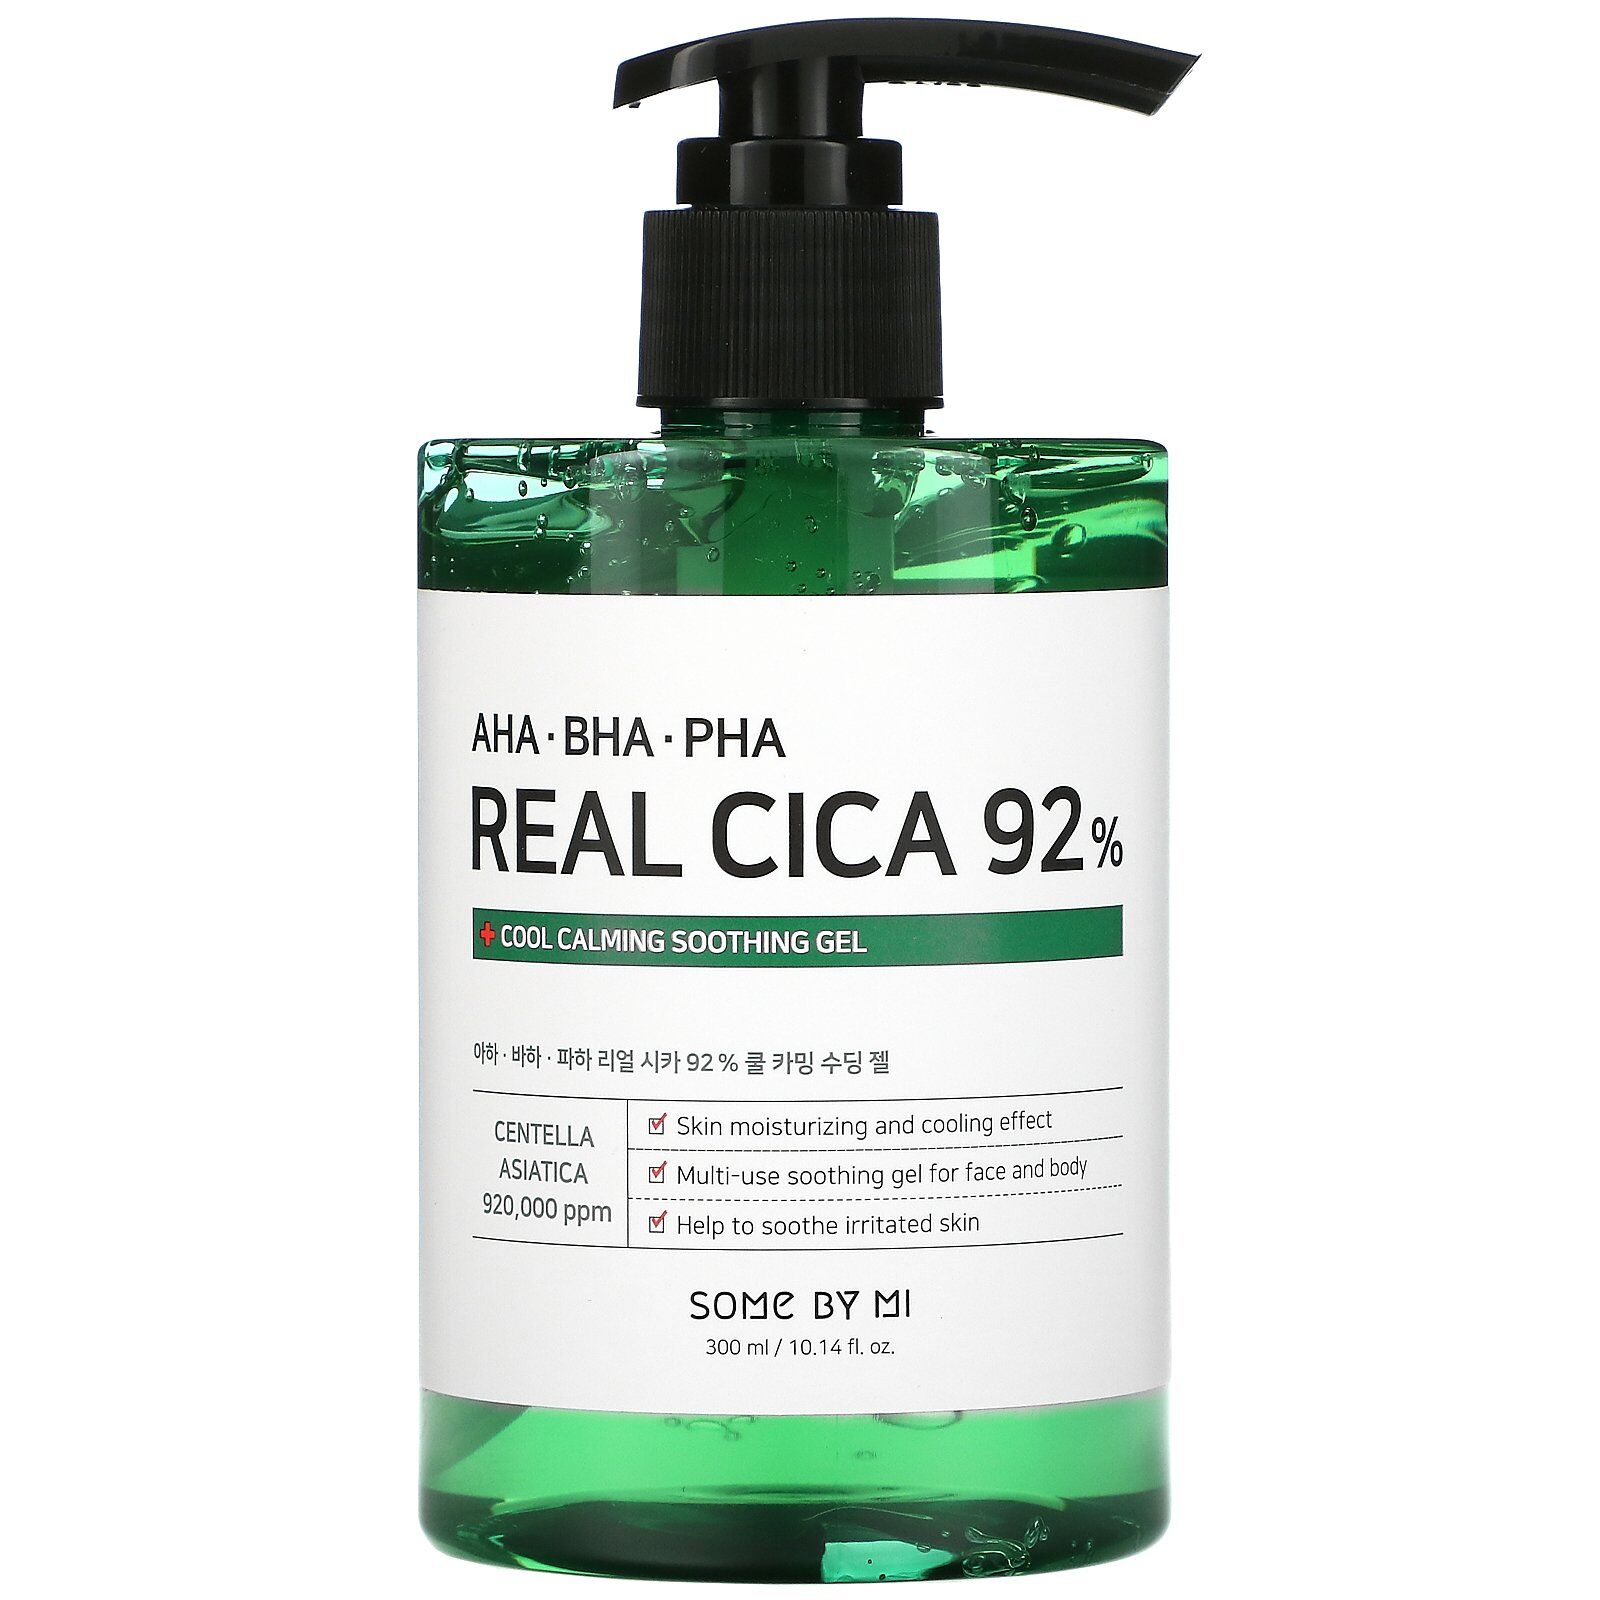 Успокаивающий гель AHA/BHA/PHA Real Cica 92% cool calming soothing gel\Some by mi